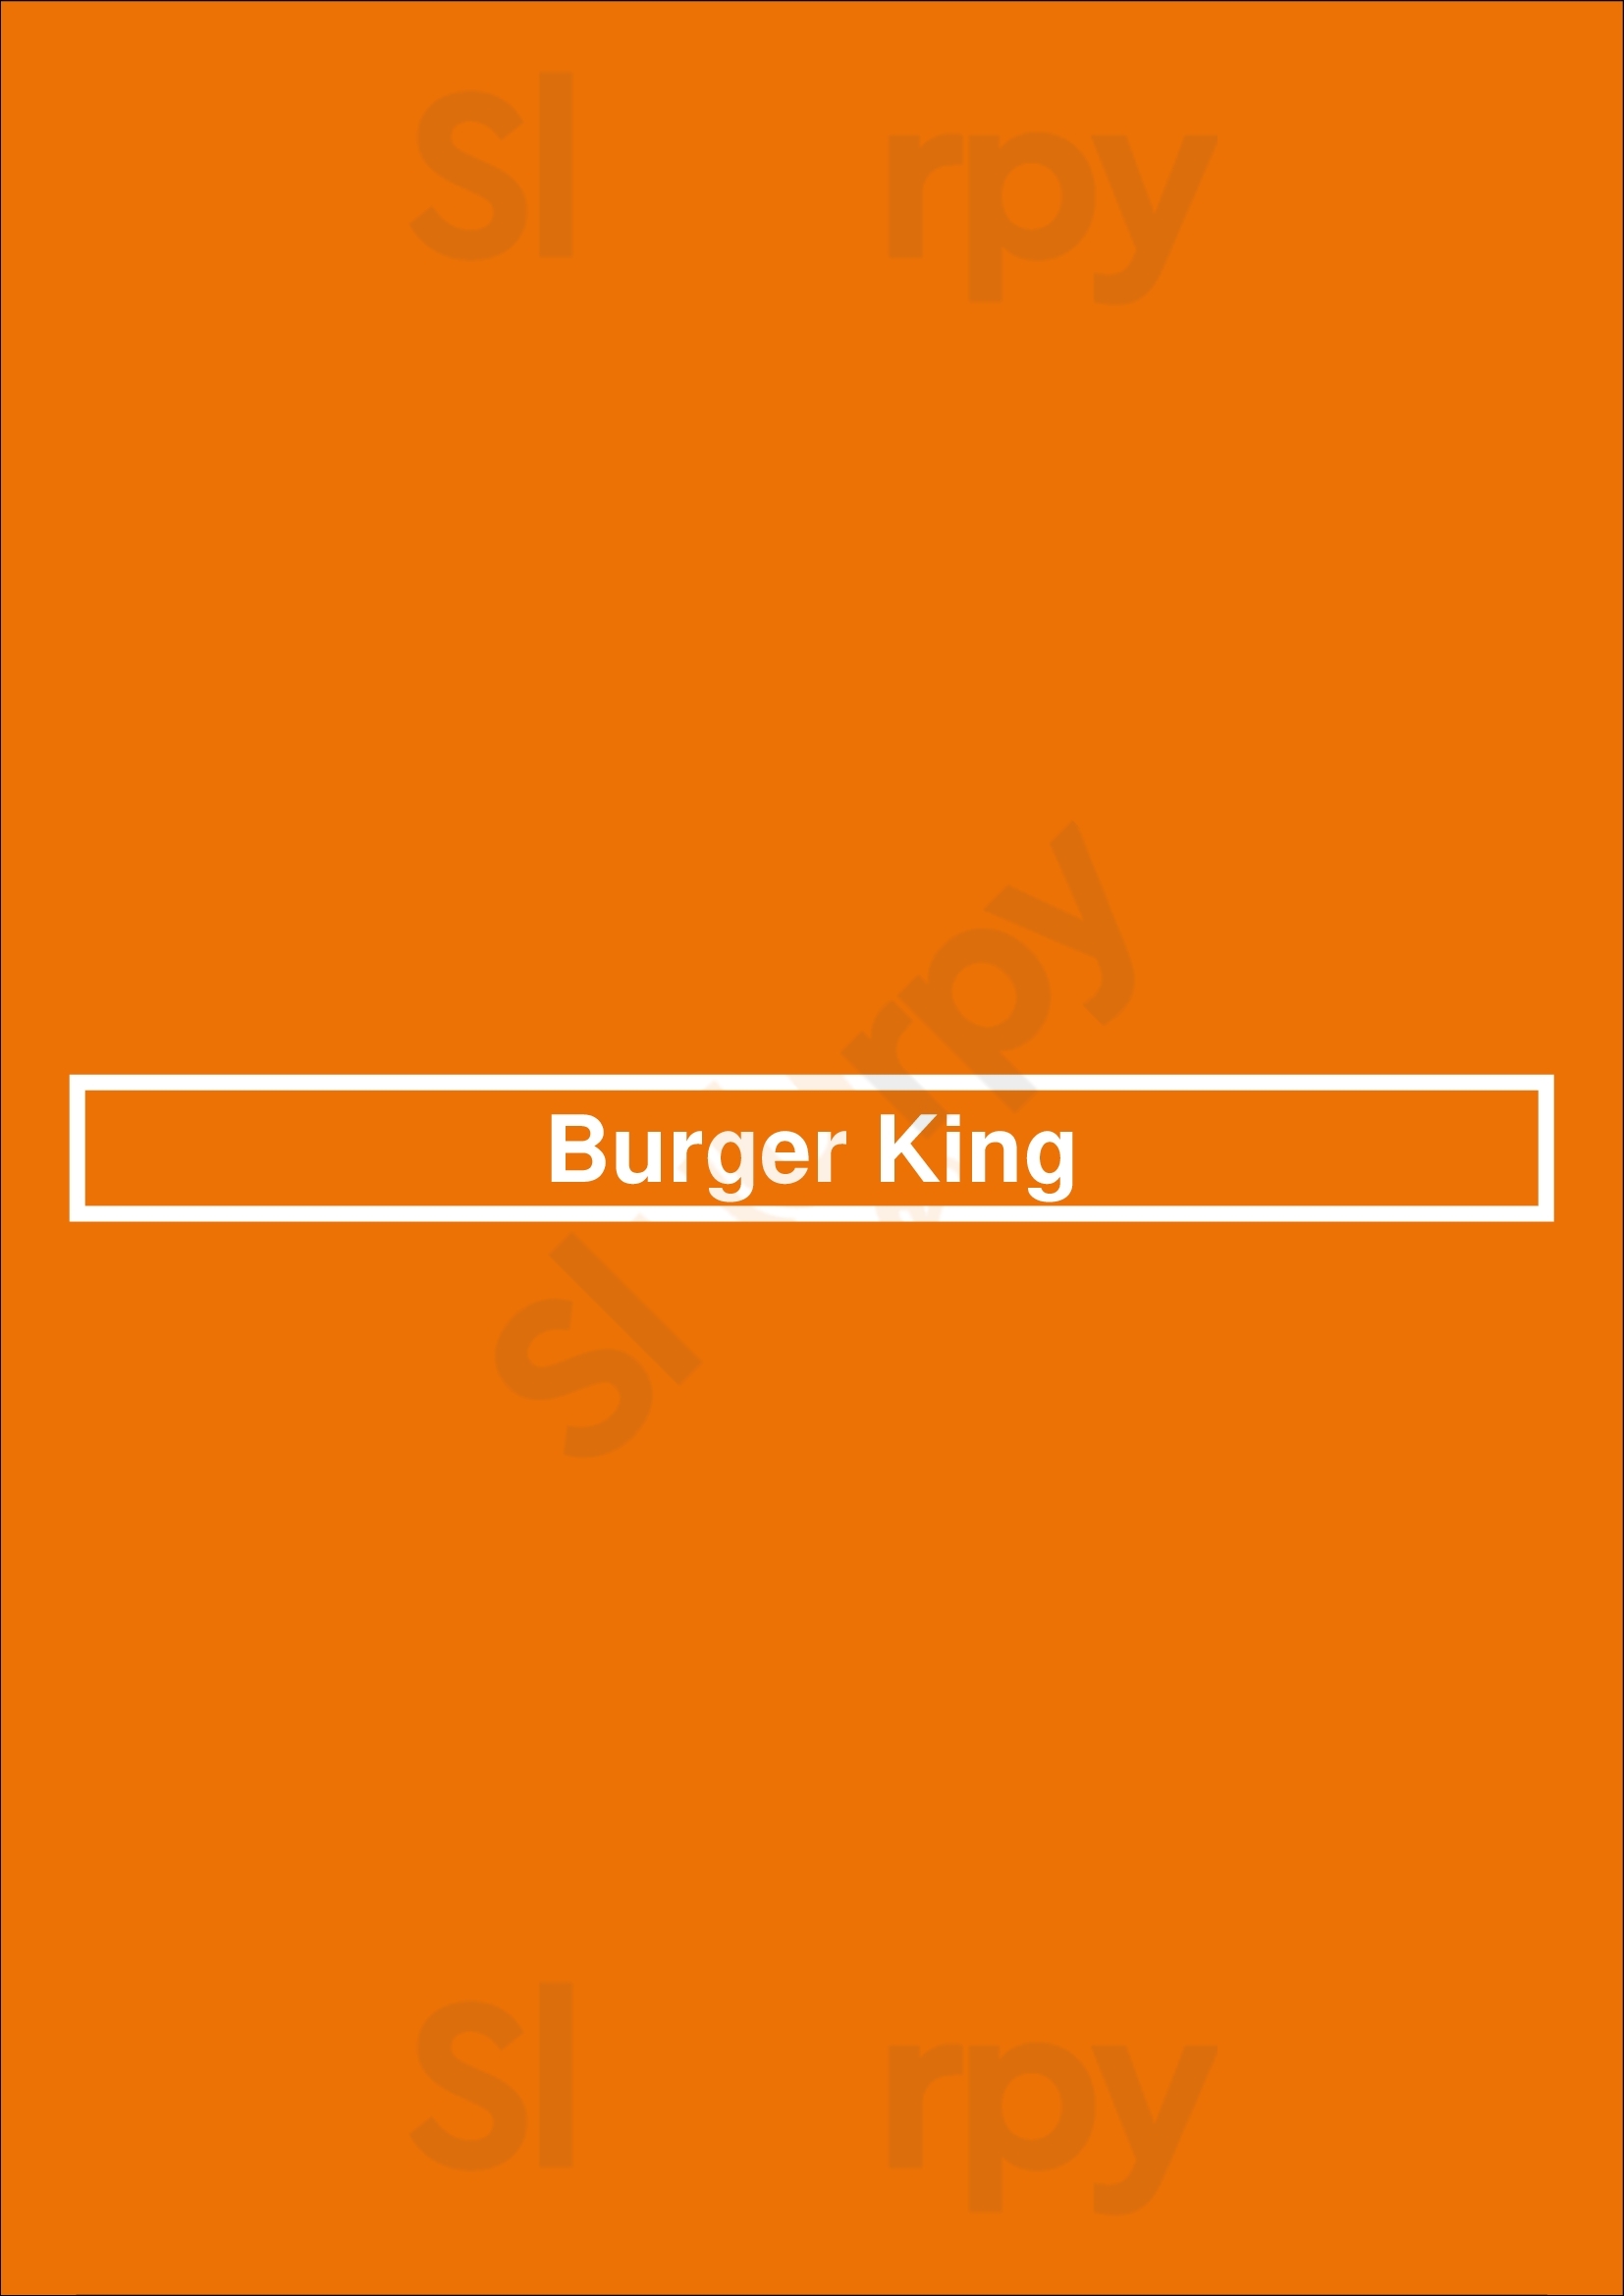 Burger King Newport Beach Menu - 1